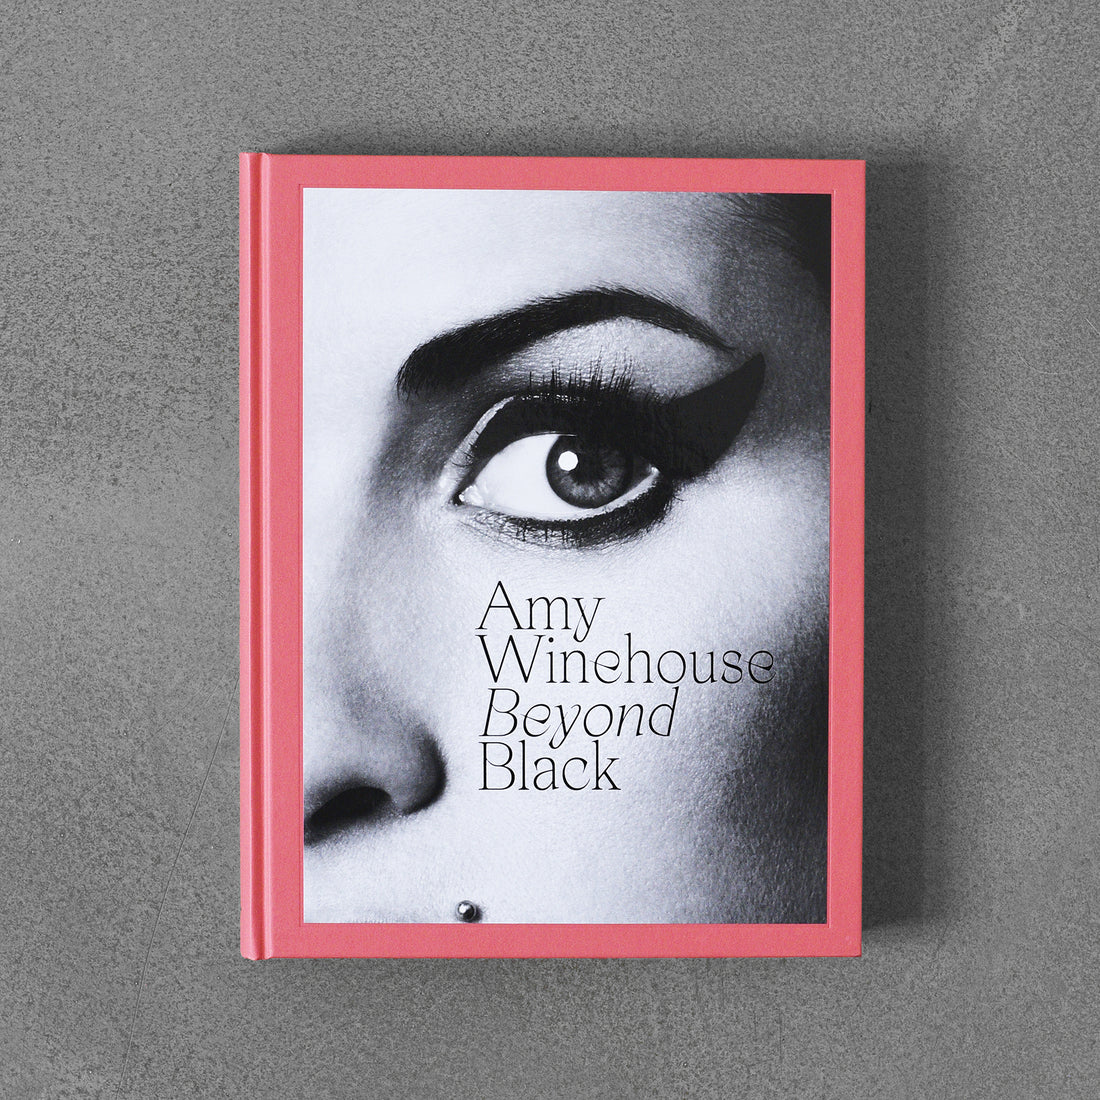 Amy Winehouse: Poza czernią Naomi Parry